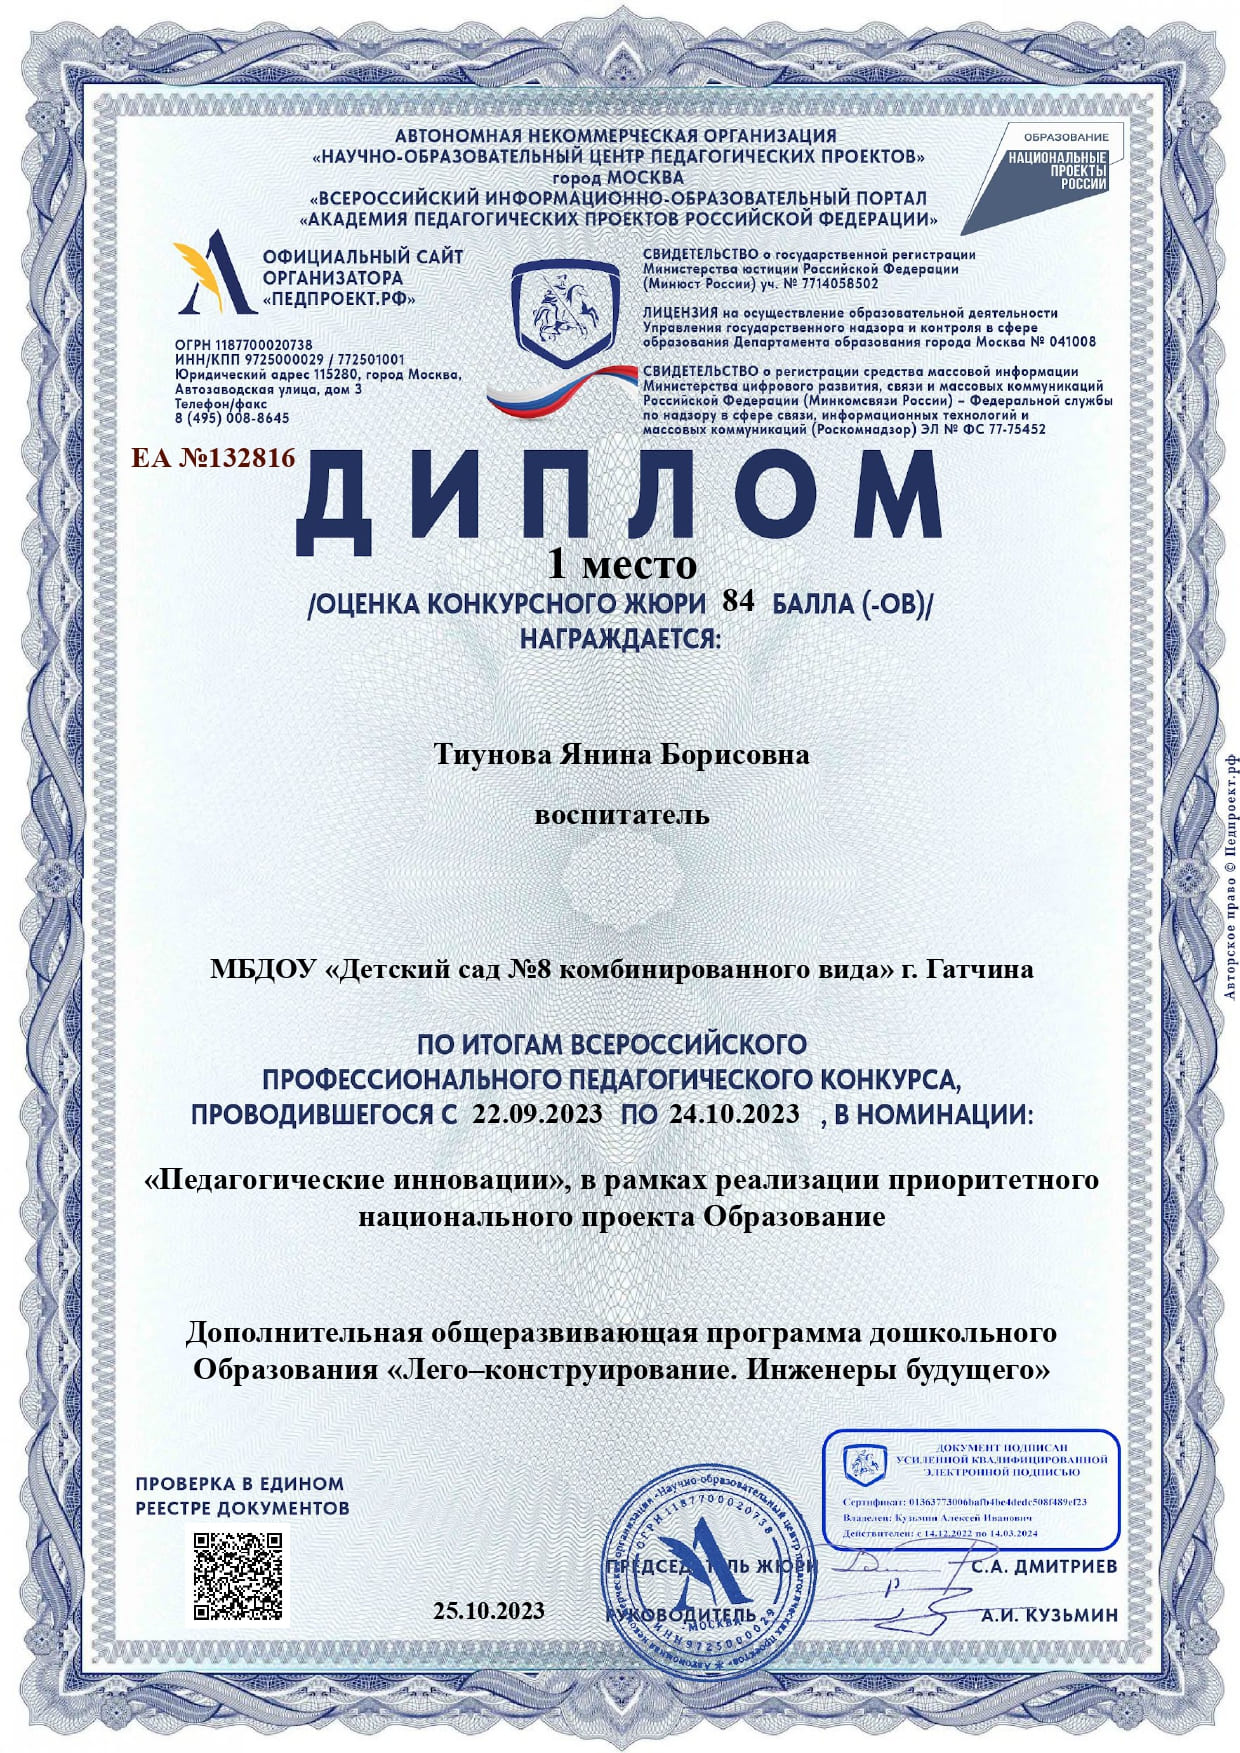 Диплом за 1 место в номинации "Педагогические инновации" Всероссийсого профессионального педагогического конкурса